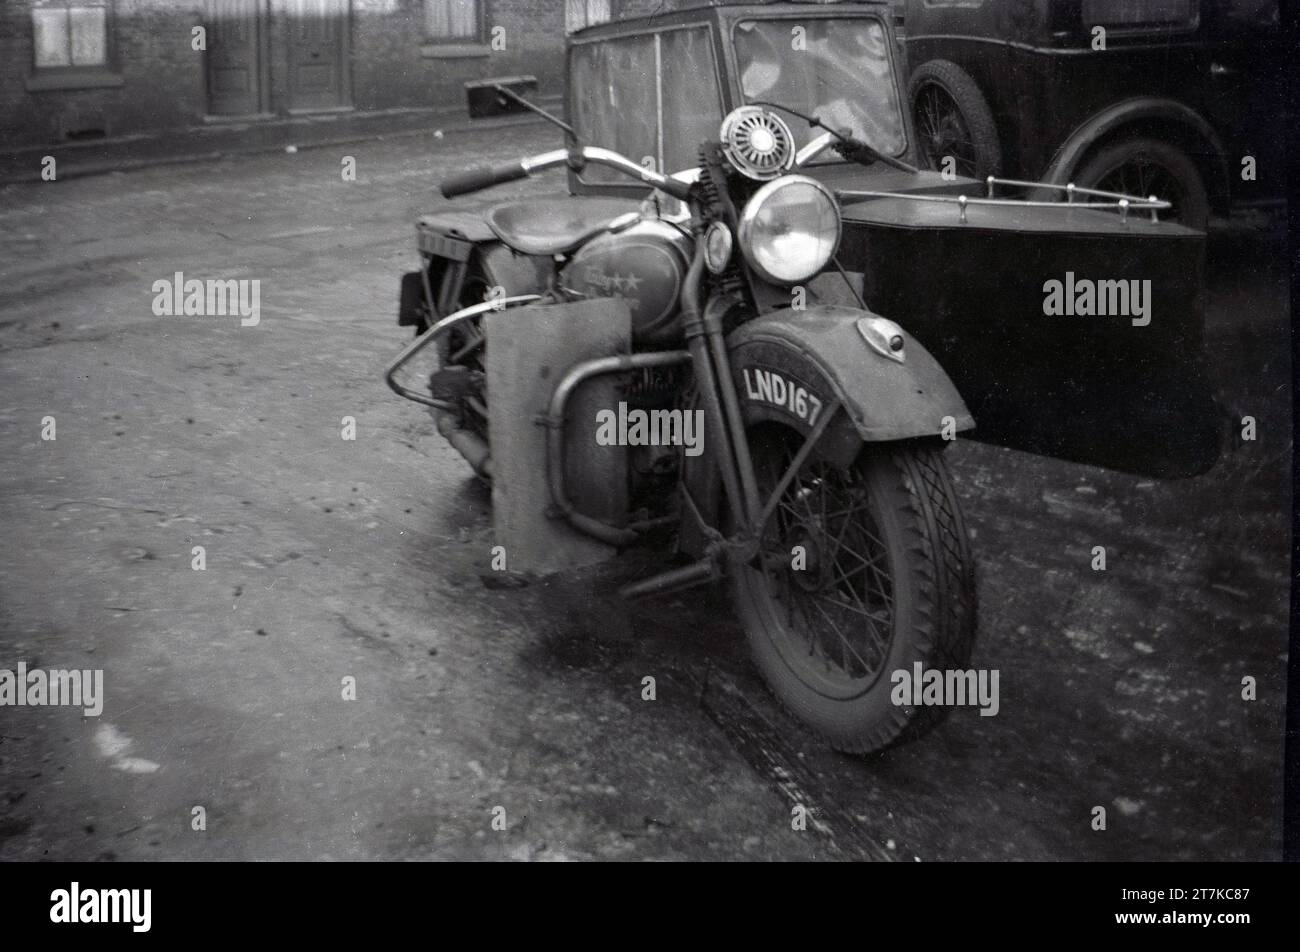 1950er Jahre, ein amerikanischer Harley Davidson Motorrad und Beiwagen, der in einer Seitenstraße in Oldham, England, Großbritannien, geparkt wurde. Das Motorrad ist möglicherweise ein WL, ein Modell aus der Zeit vor dem Zweiten Weltkrieg. Das Design des Beiwagens ist interessant und sieht aus wie ein kleines Boot mit geschlossenem Dach. Stockfoto